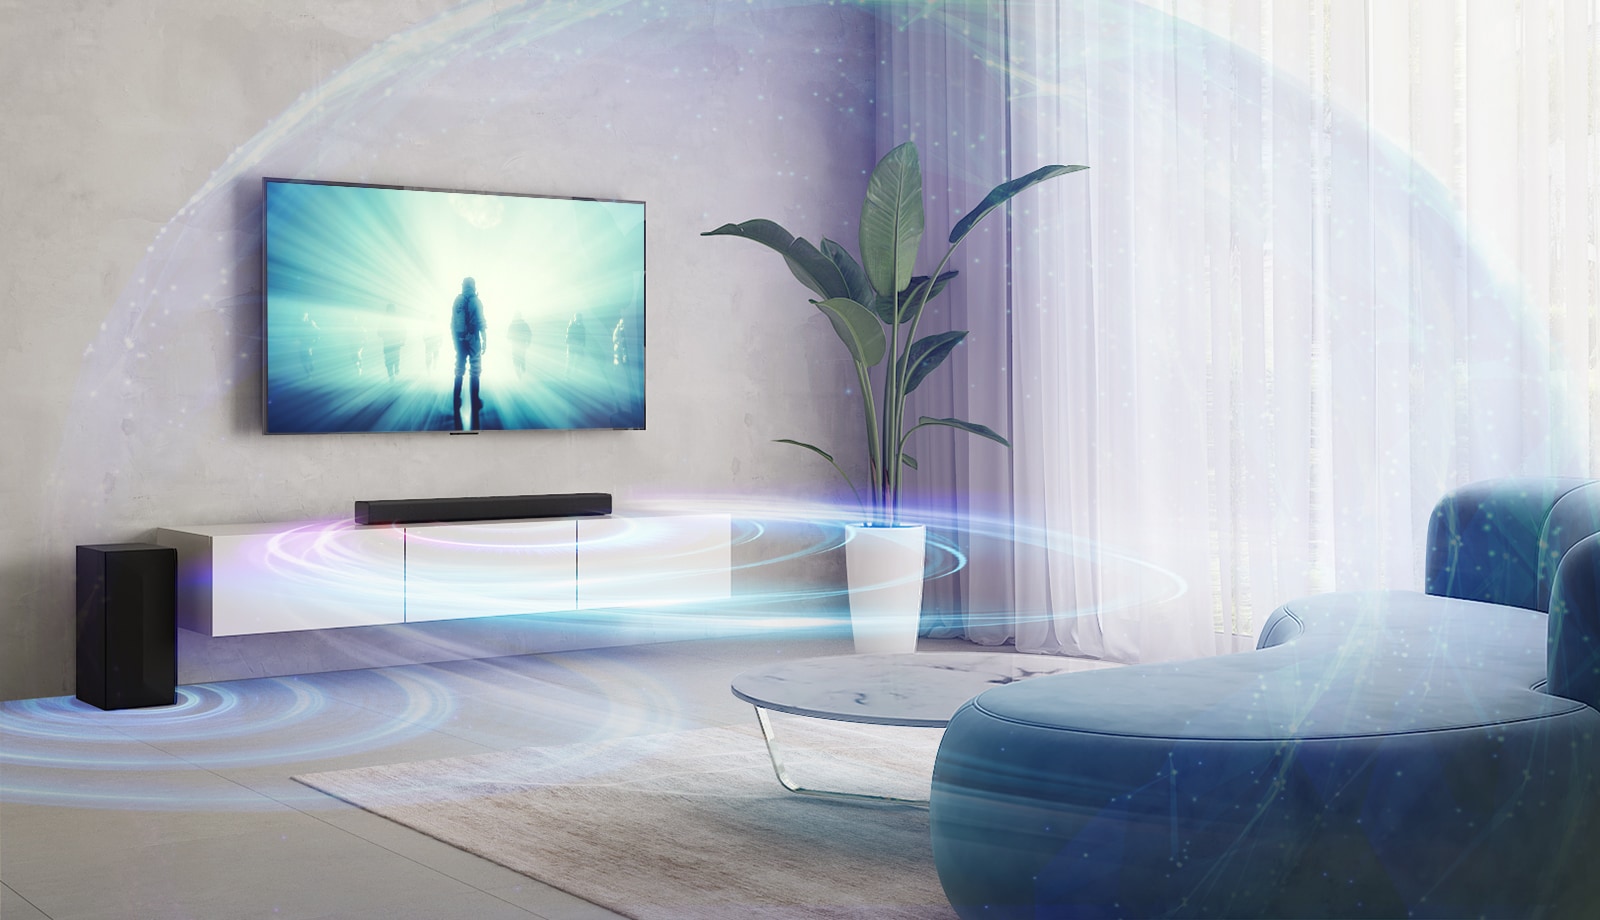 LG TV-en henger på veggen i stua. En film spilles av på TV-skjermen. LG-lydplanken står rett nedenfor TV-en på en beige hylle, med en bakhøyttaler på venstre side.